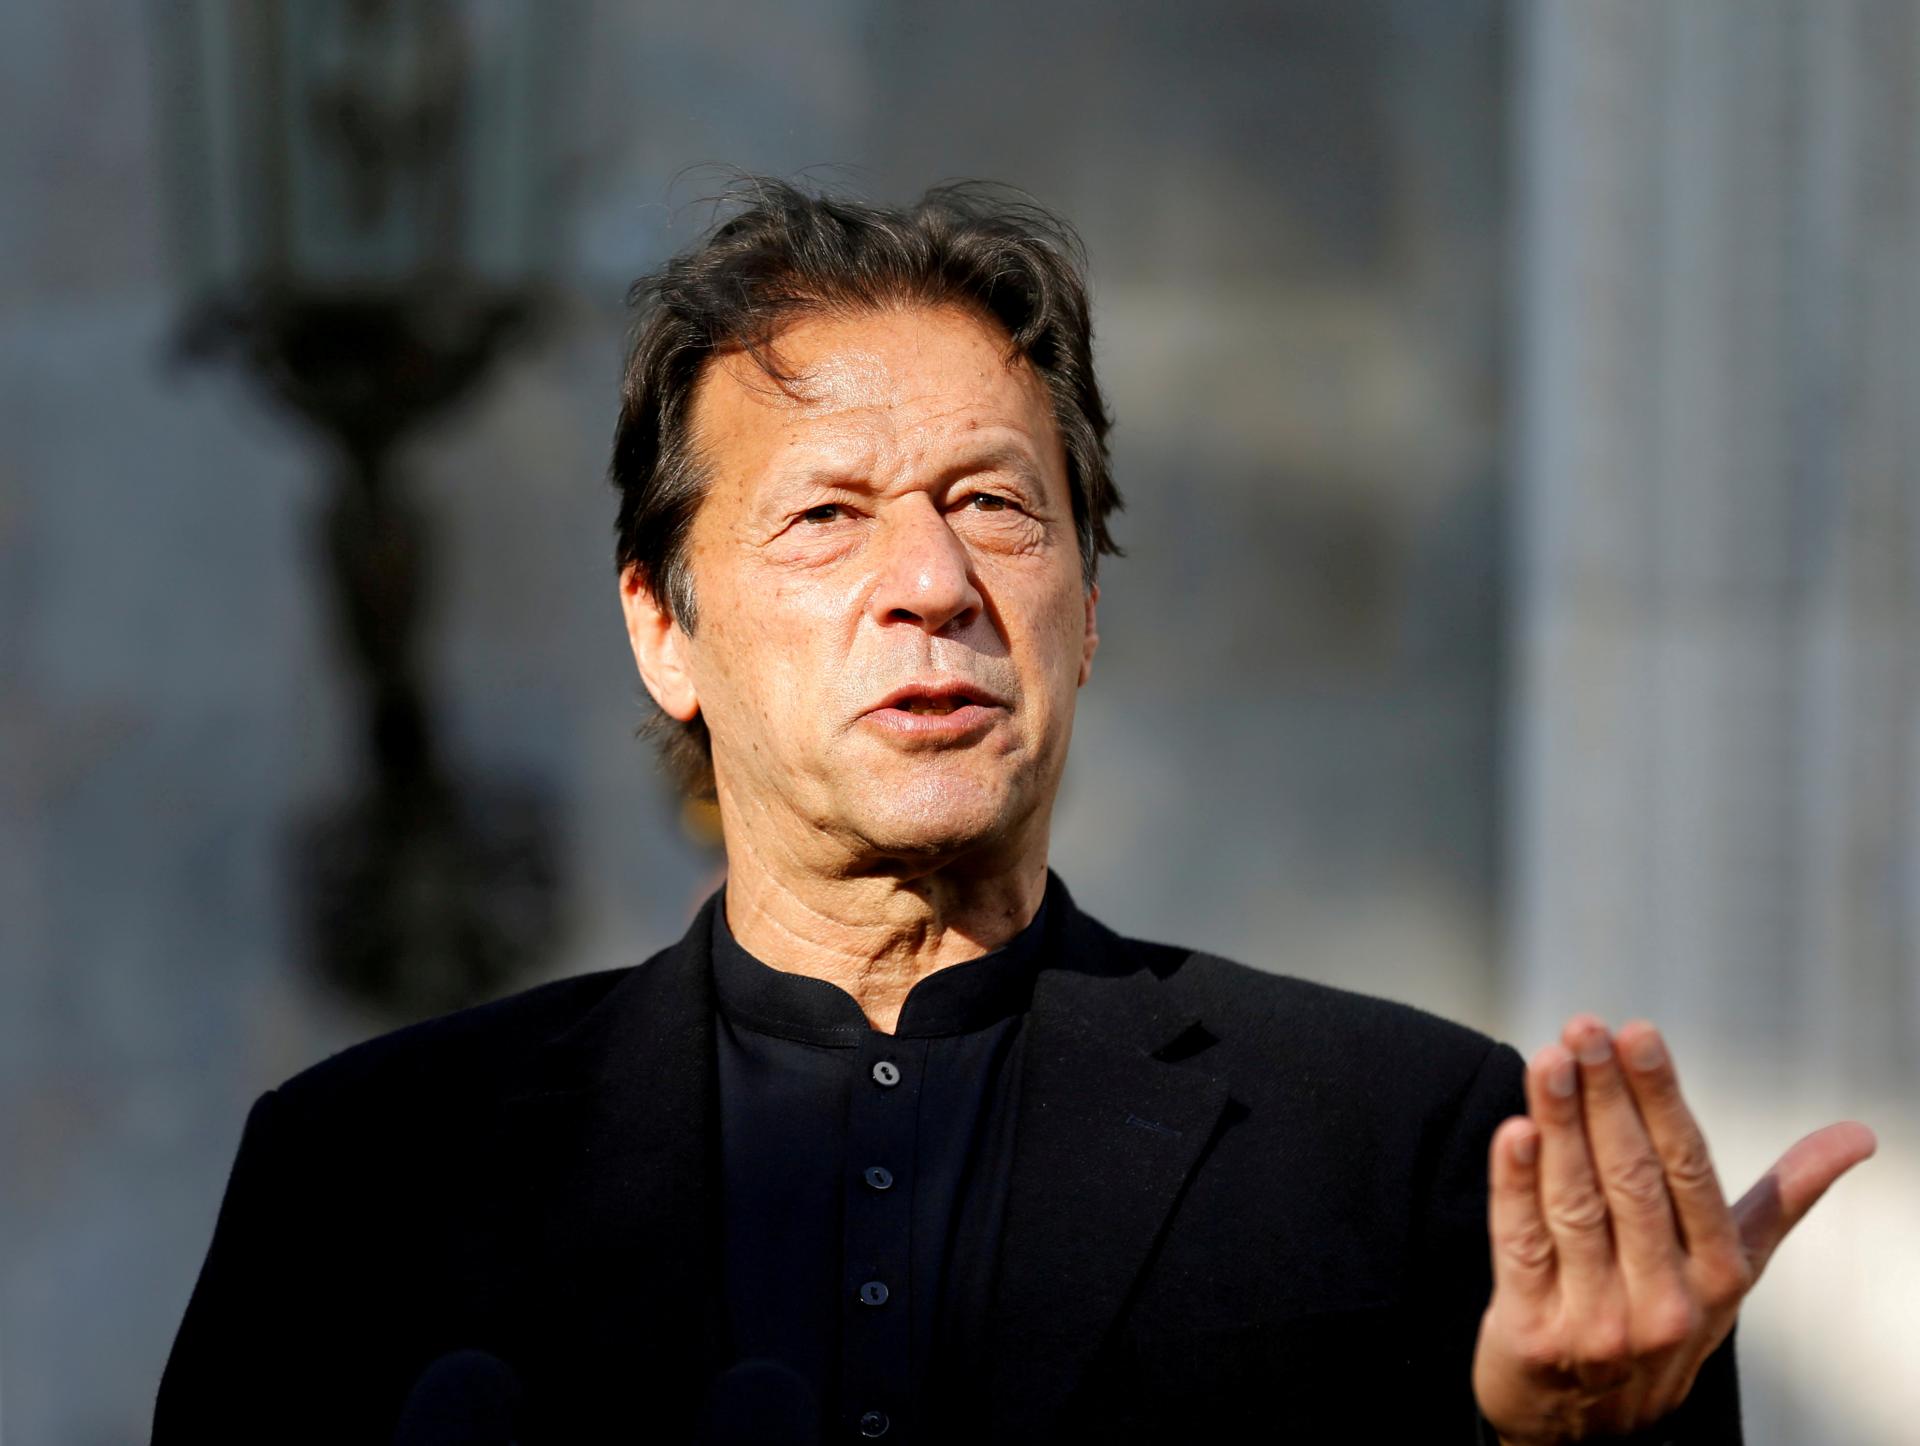 کوئٹہ دھماکے میں معصوم جانوں کے ضیاع پر وزیراعظم عمران خان کا اظہار افسوس